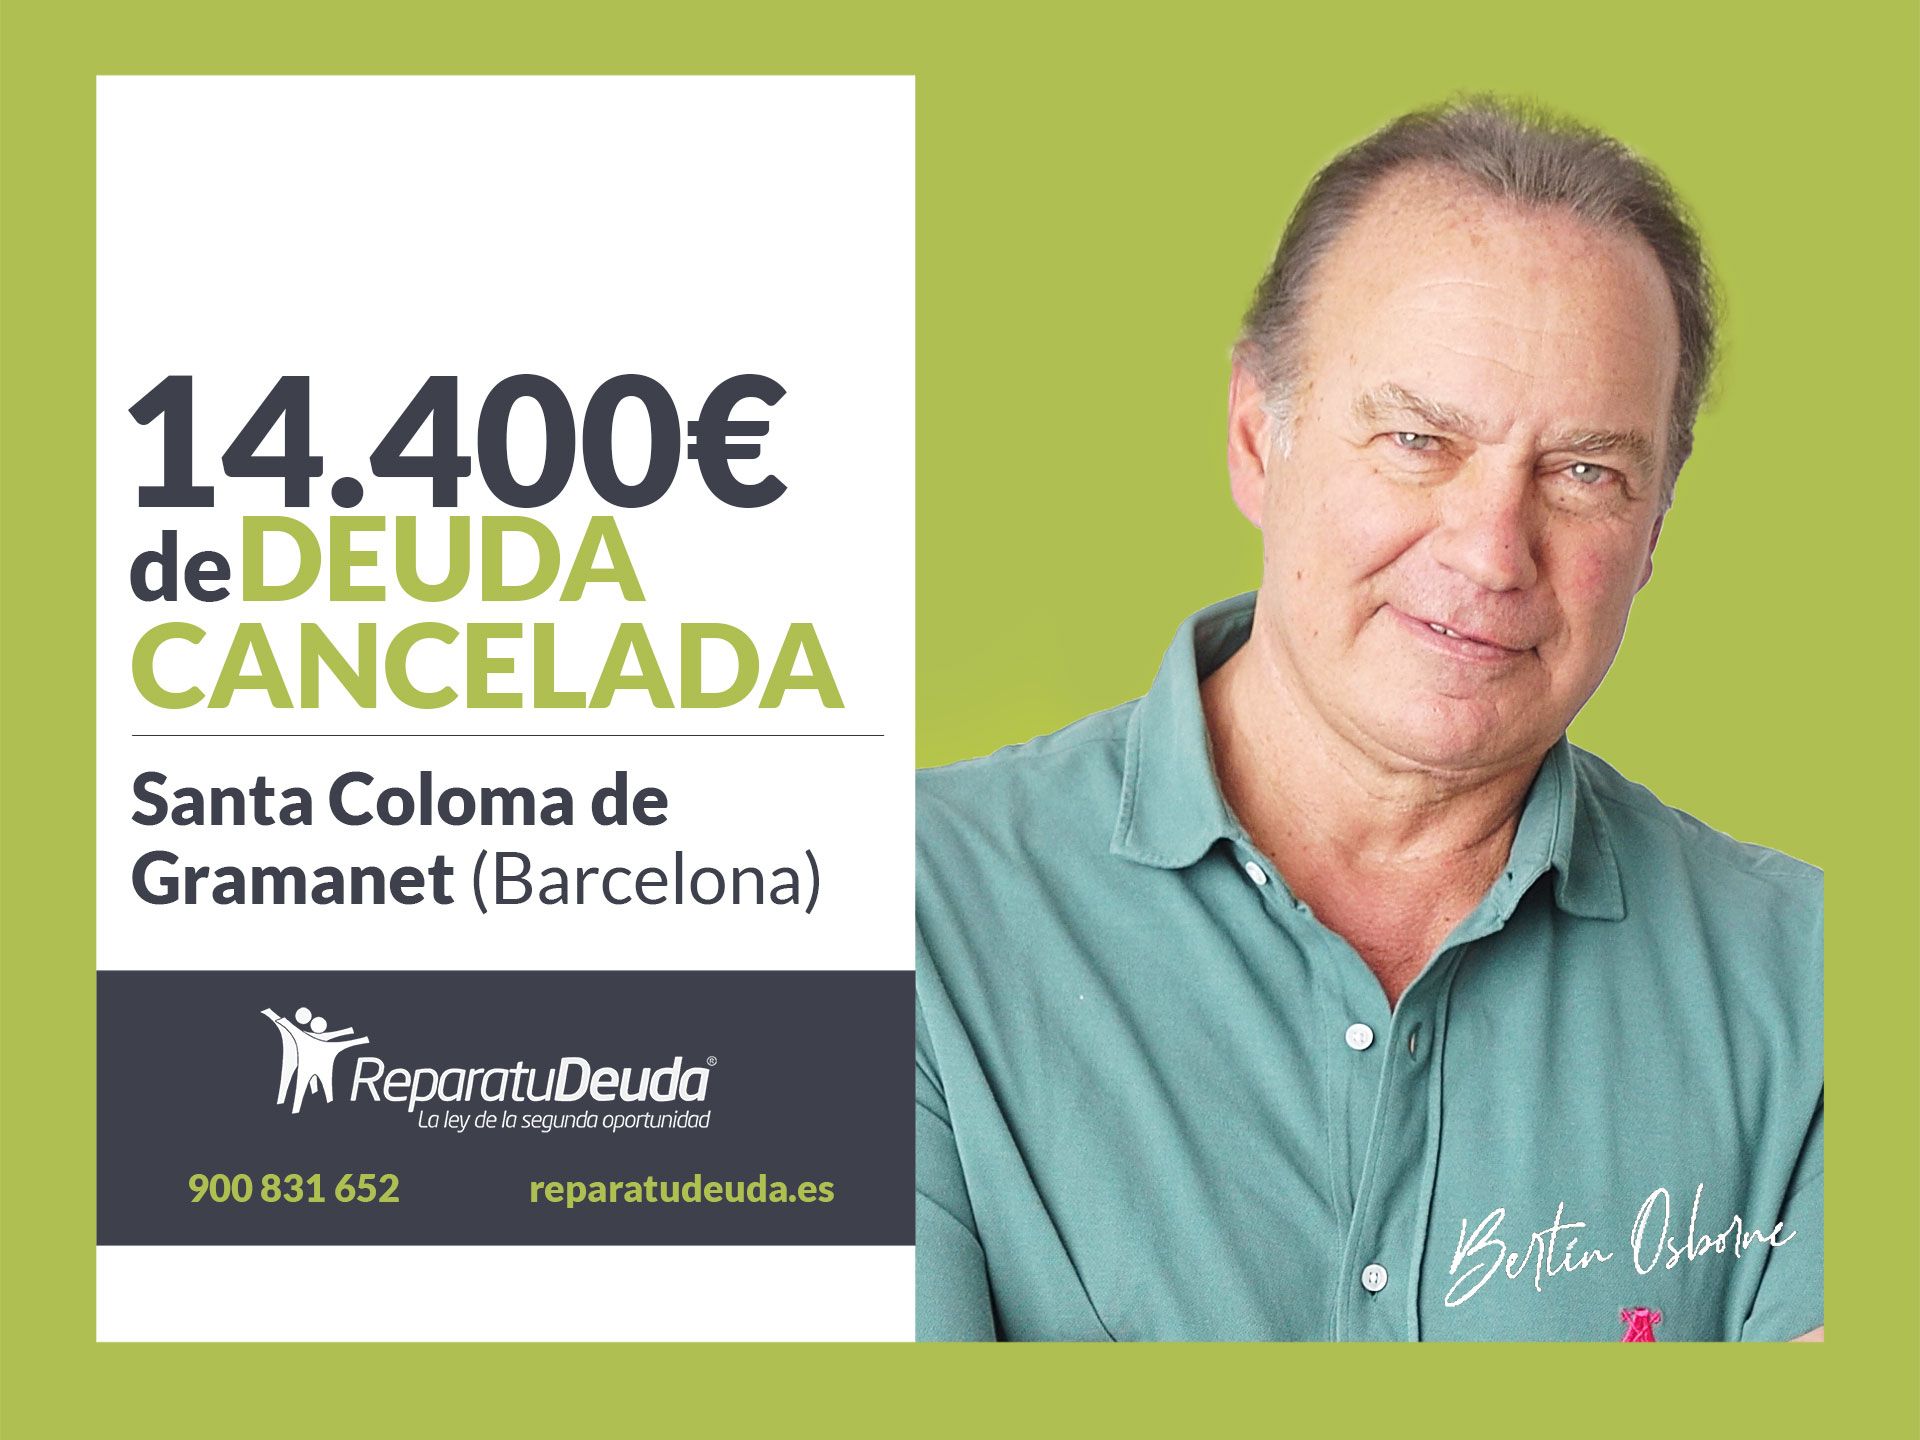 Repara tu Deuda cancela 14.400? en Santa Coloma de Gramanet (Barcelona) con la Ley de Segunda Oportunidad